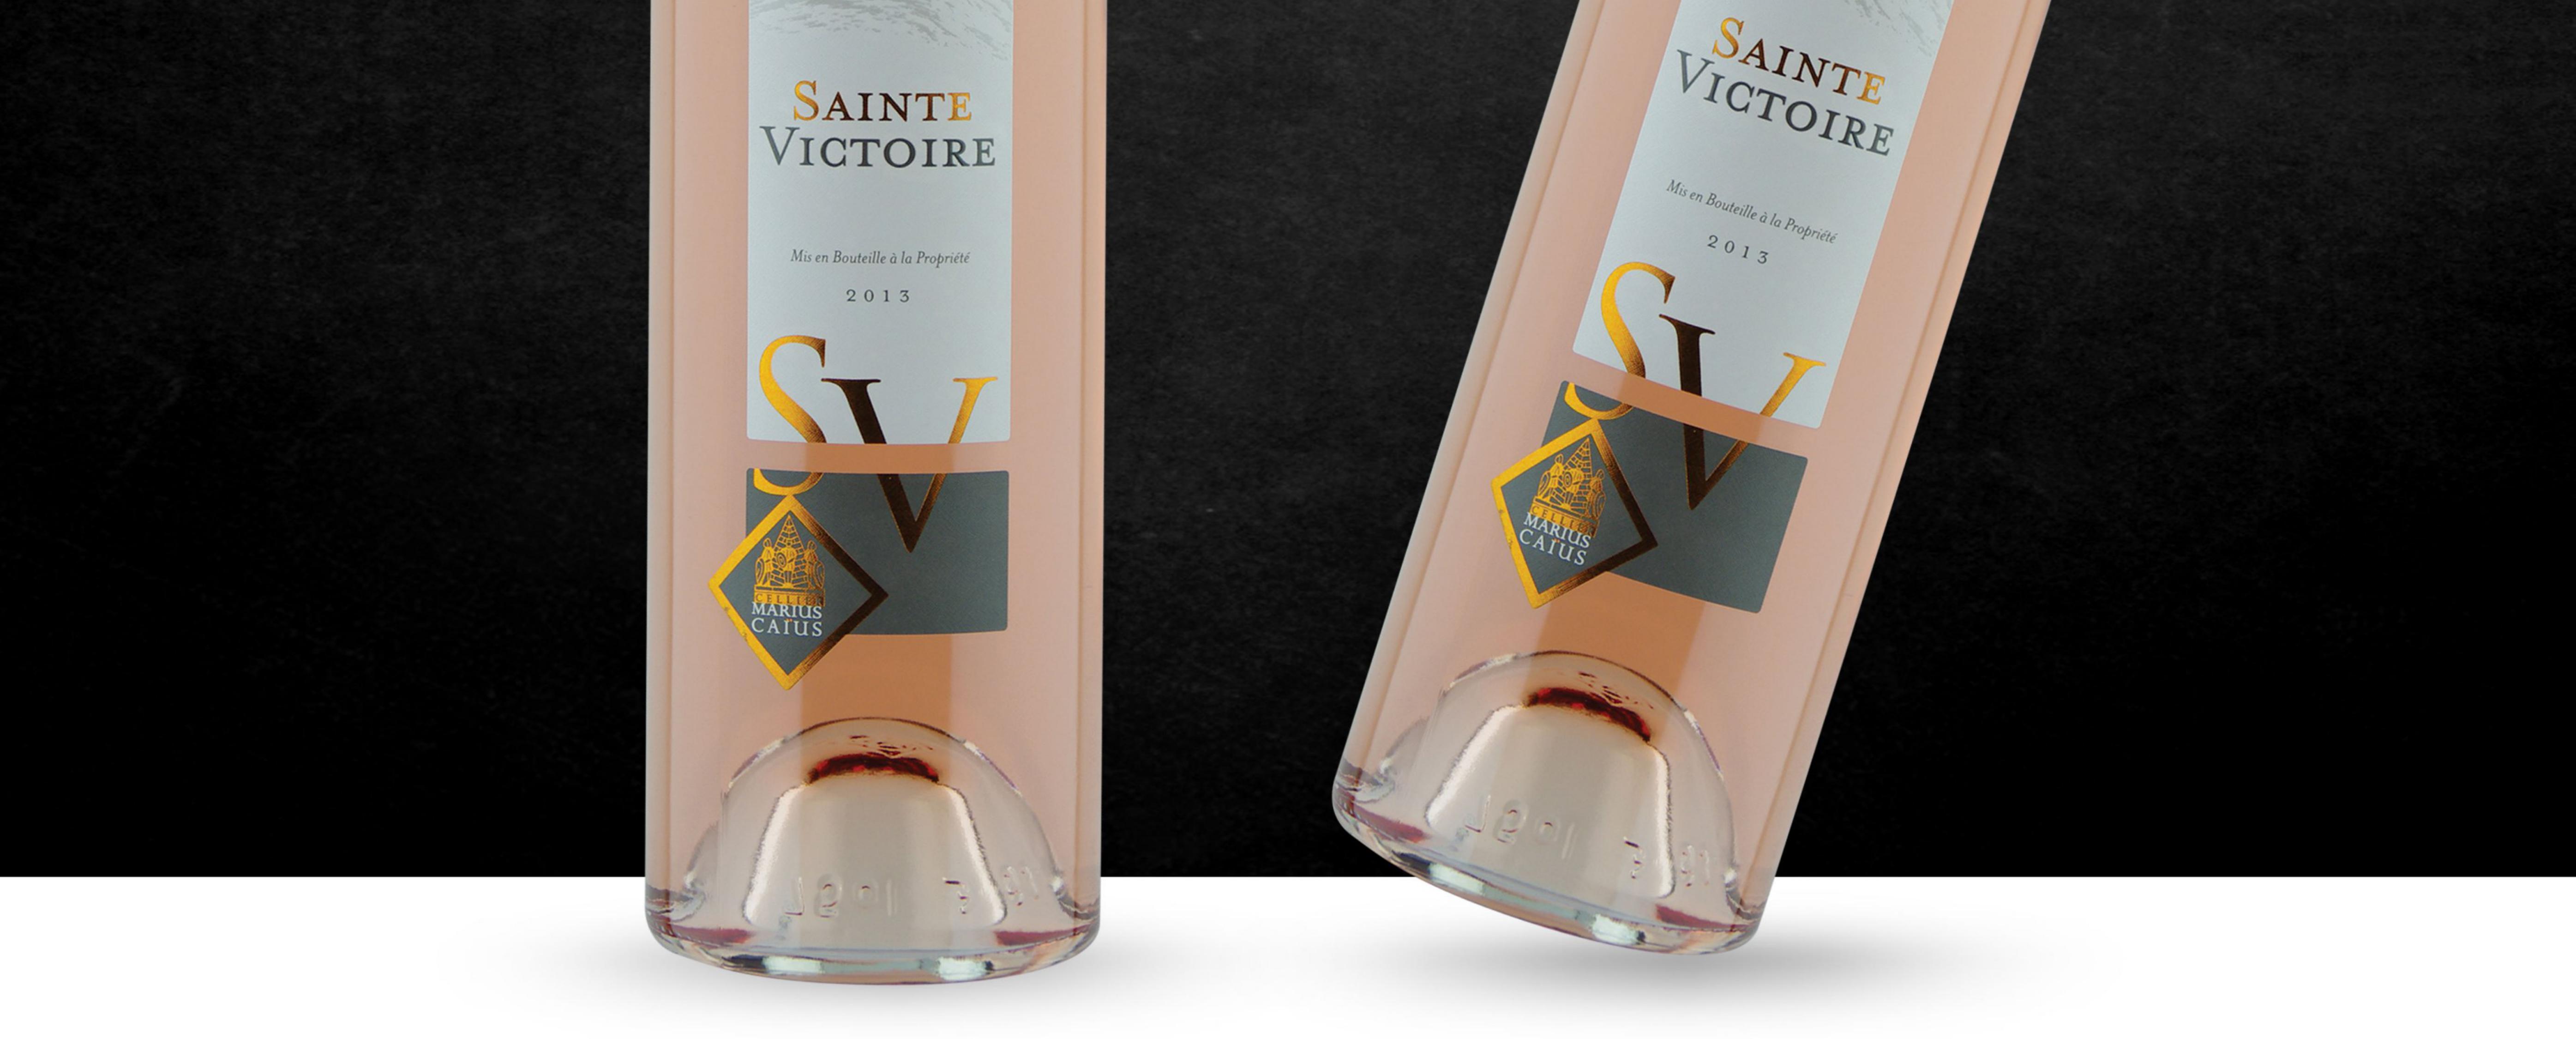 Vin Sainte Victoire